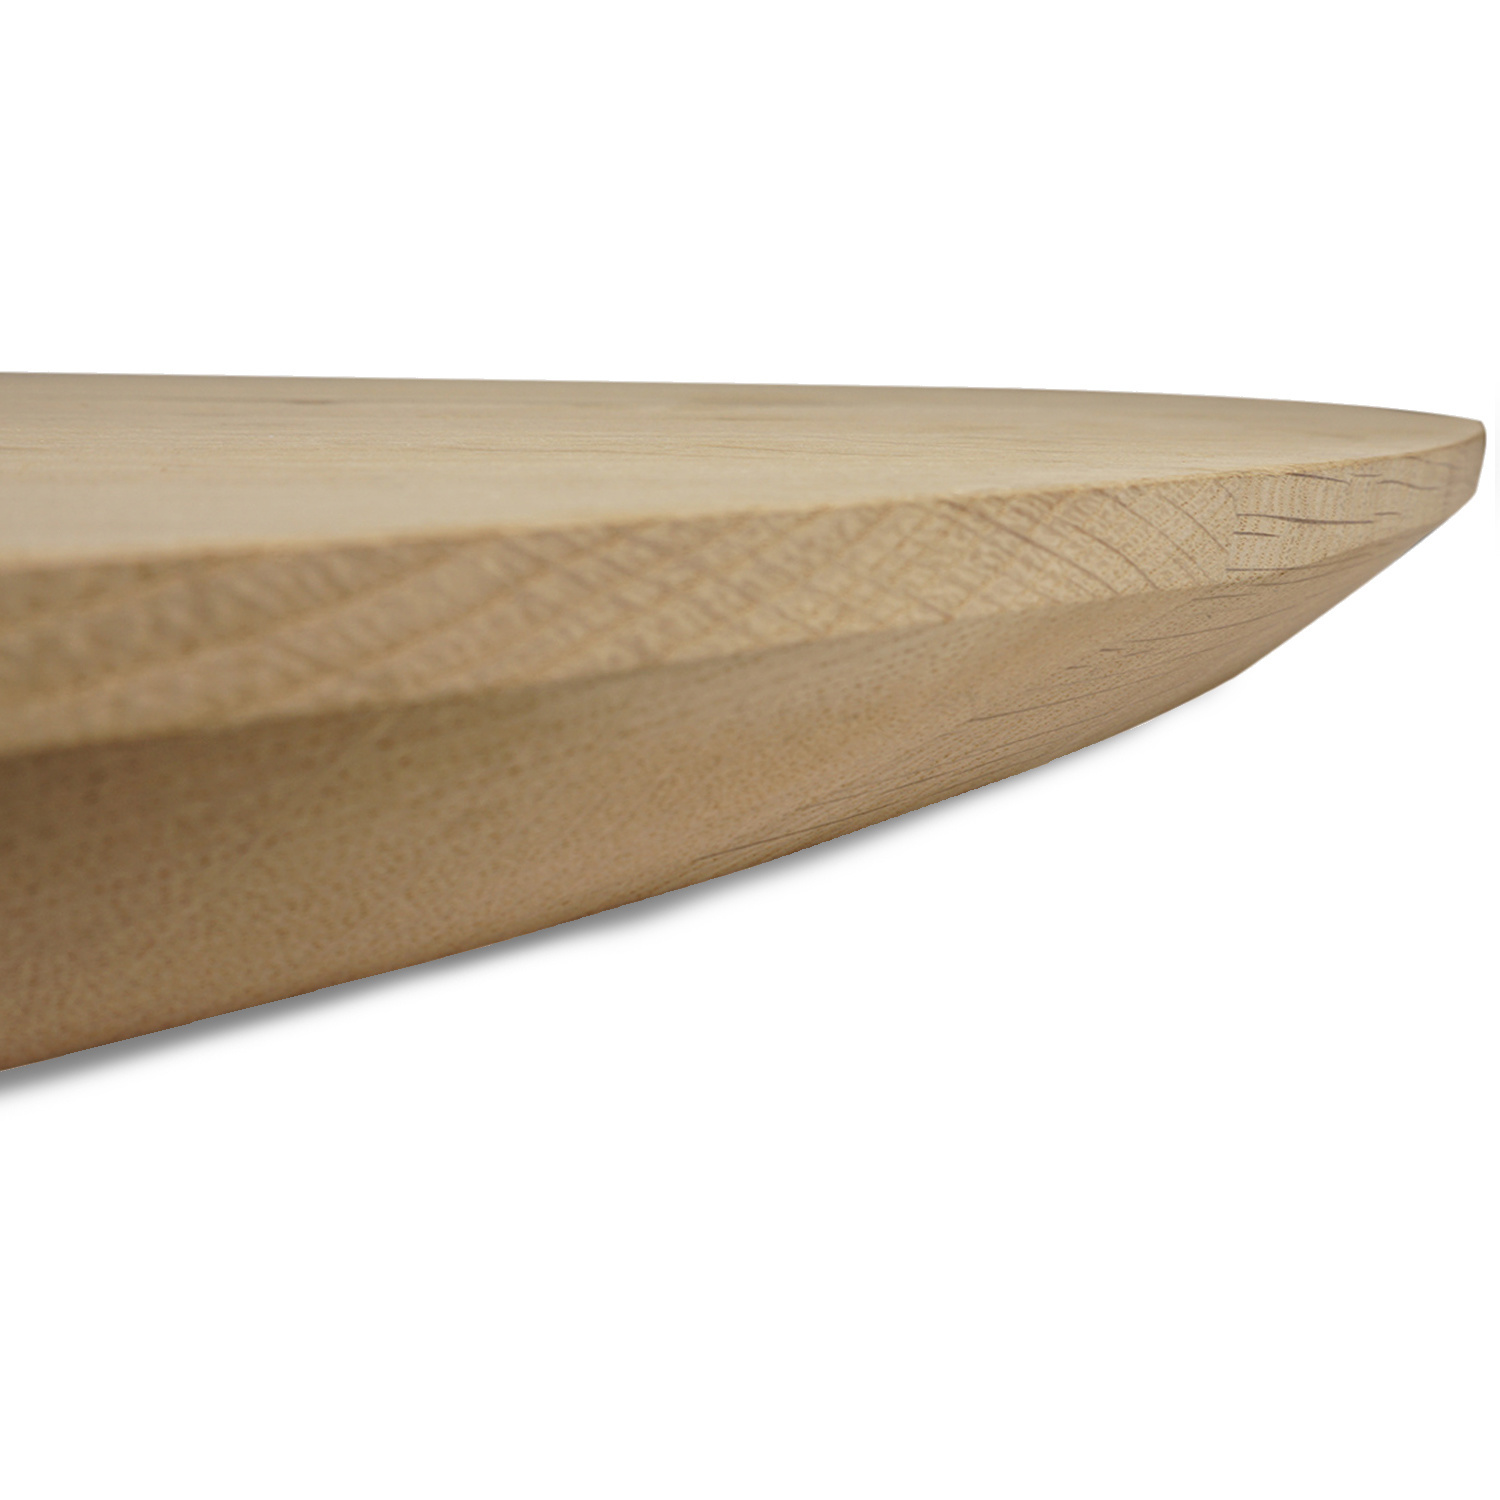  Tischplatte Eiche rund nach Maß - 2,7 cm dick (1-Schicht) - Breite Lamellen (10 - 12 cm breit) - Eichenholz rustikal - verleimt & künstlich getrocknet (HF 8-12%) - Durchmesser: 50 - 117 cm